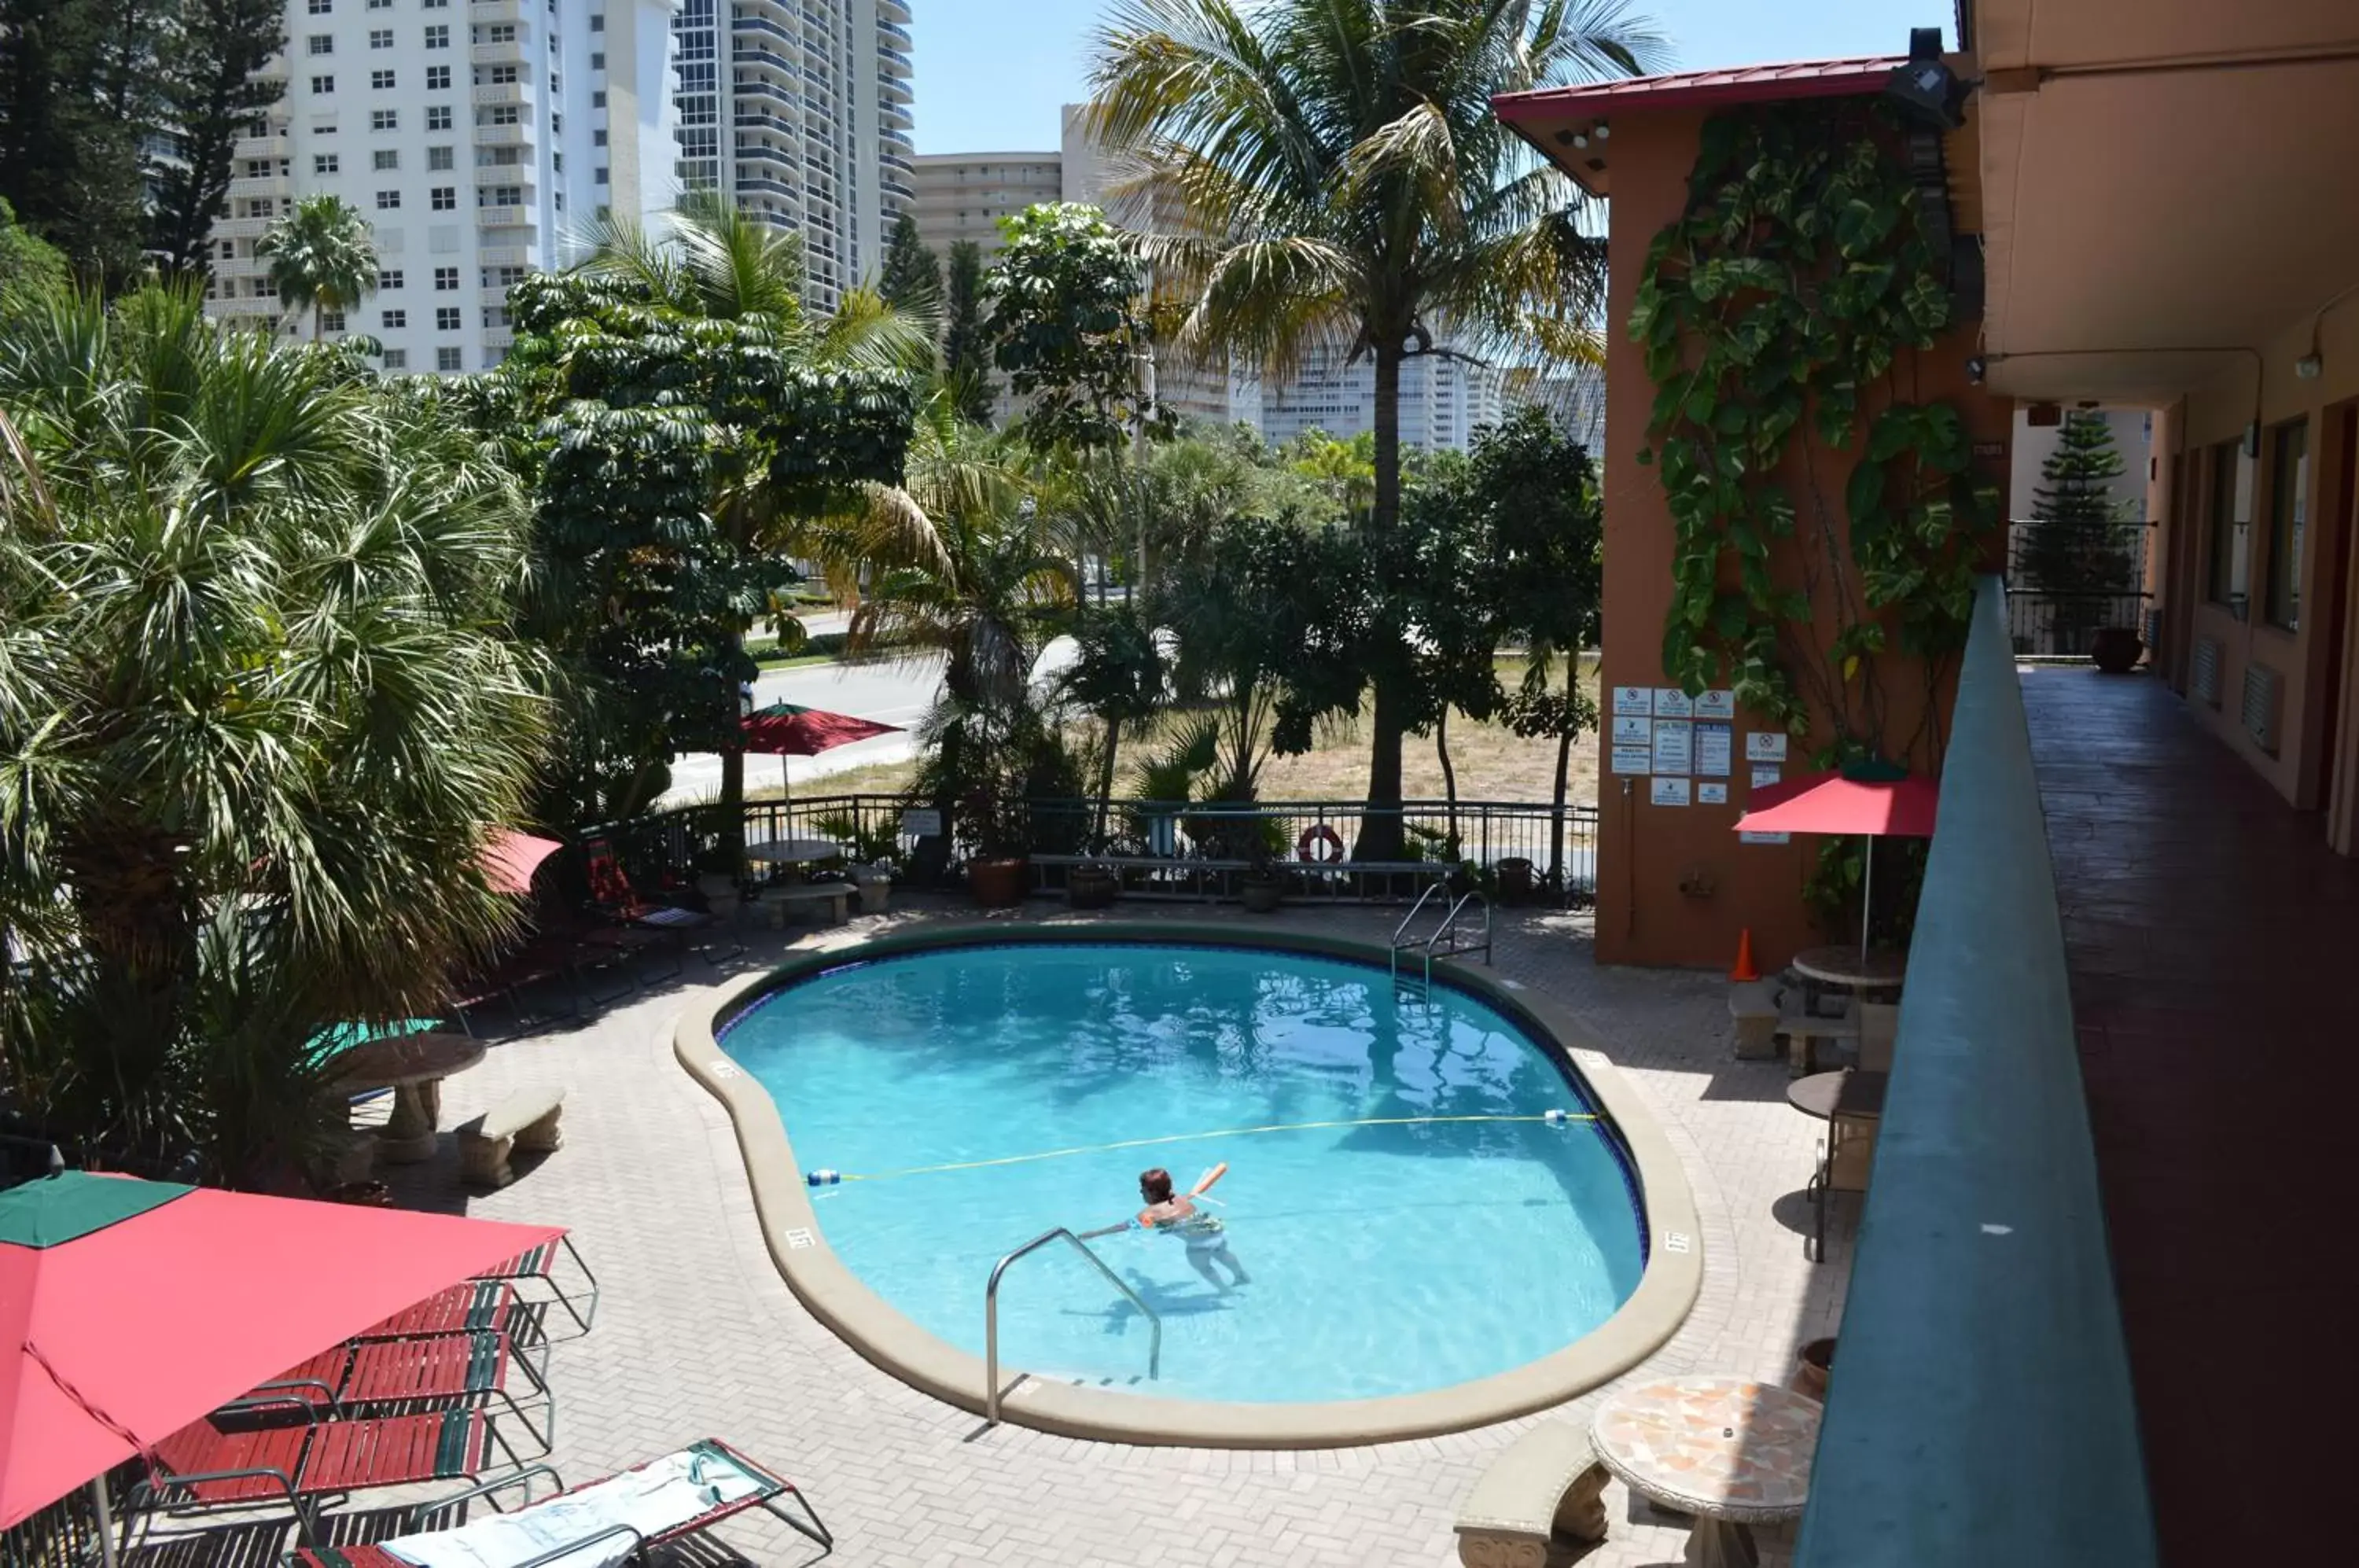 Pool View in Ft. Lauderdale Beach Resort Hotel